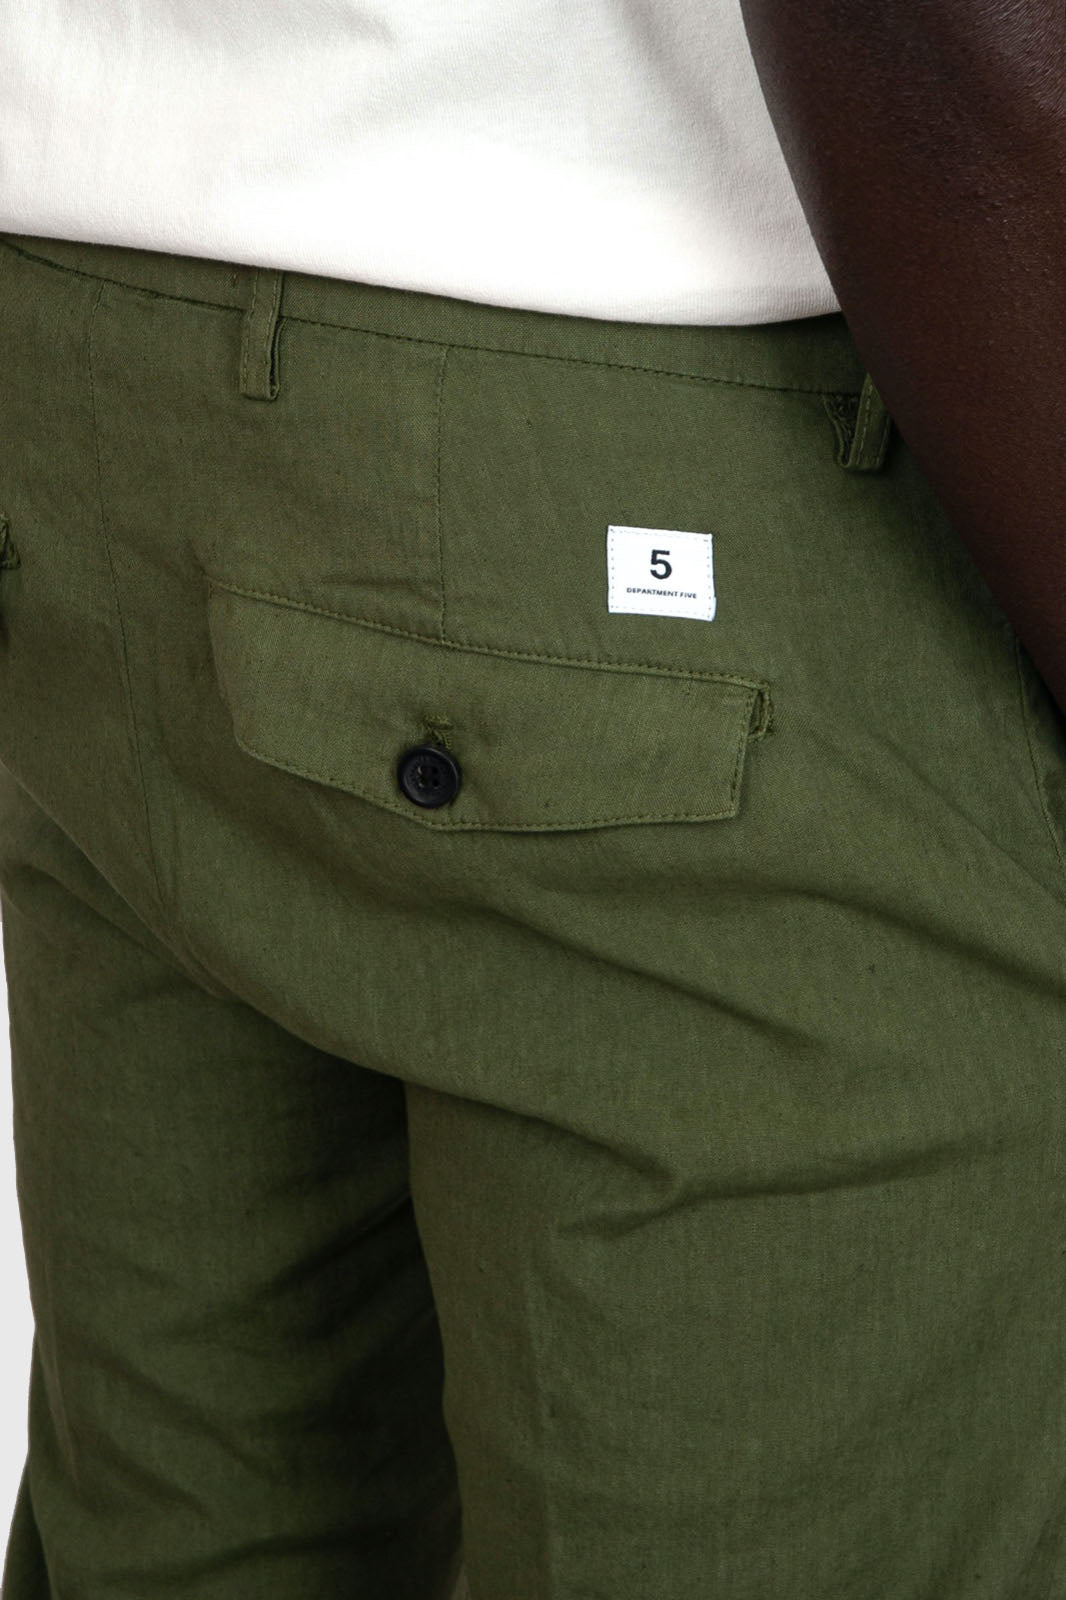 Department Five Pantalone Prince Pinces Cotone Verde Militare - 5